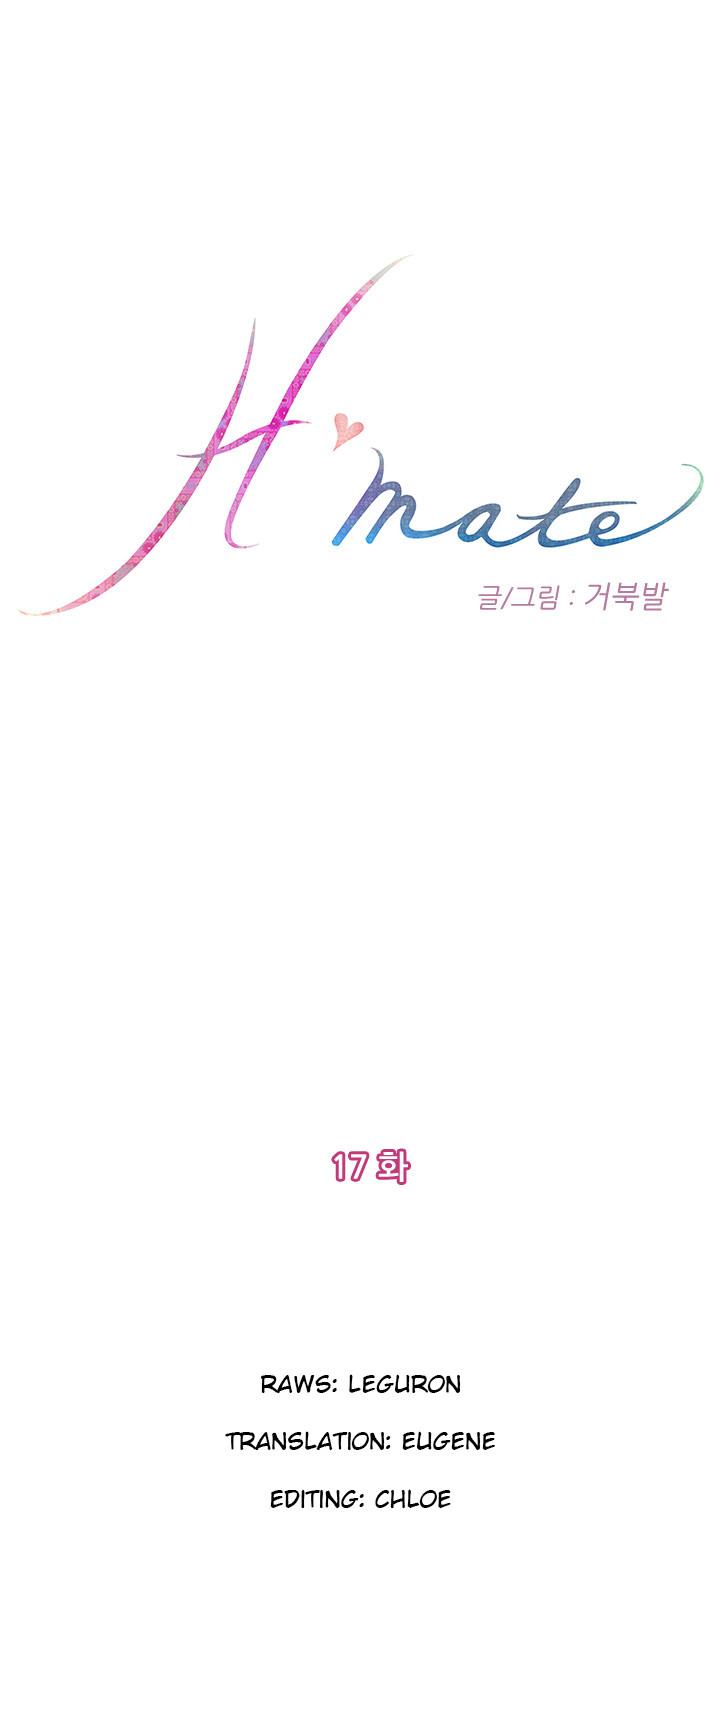 (YoManga) H-Mate - Chapters 1-30 (English) 246